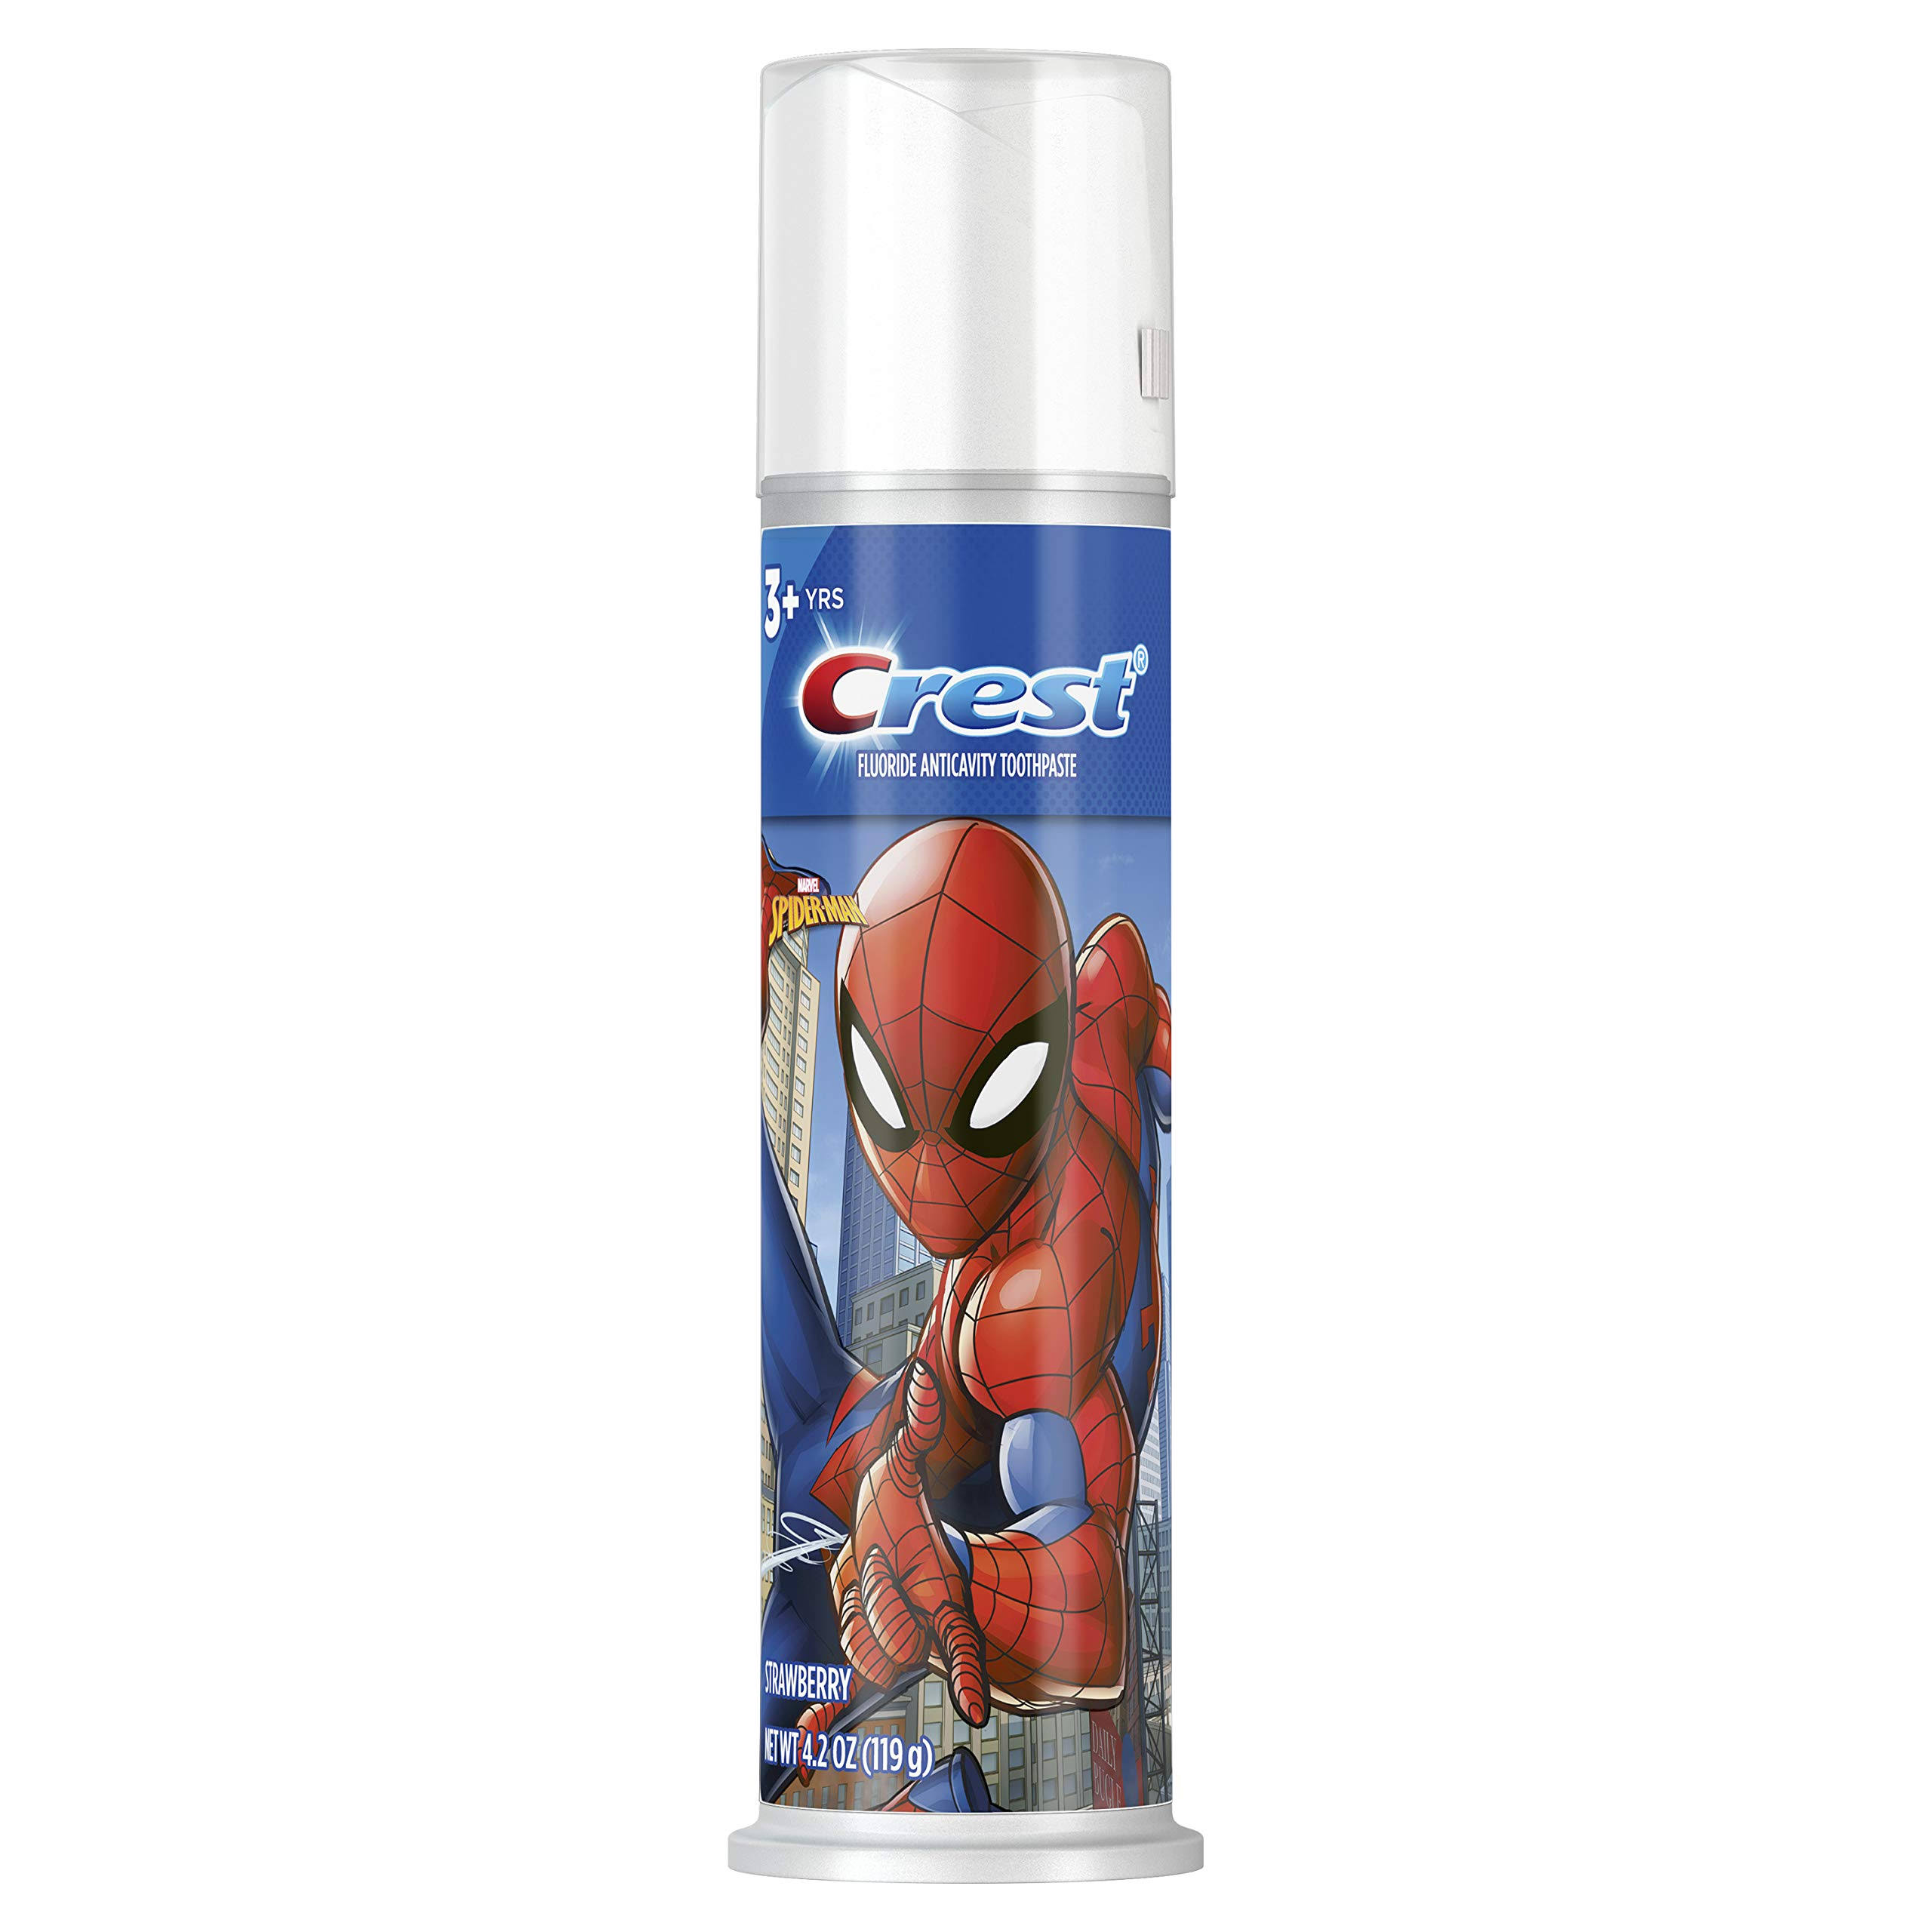 Crest Toothpaste, Fluoride, Anticavity, Strawberry, Spider-Man - 4.2 oz